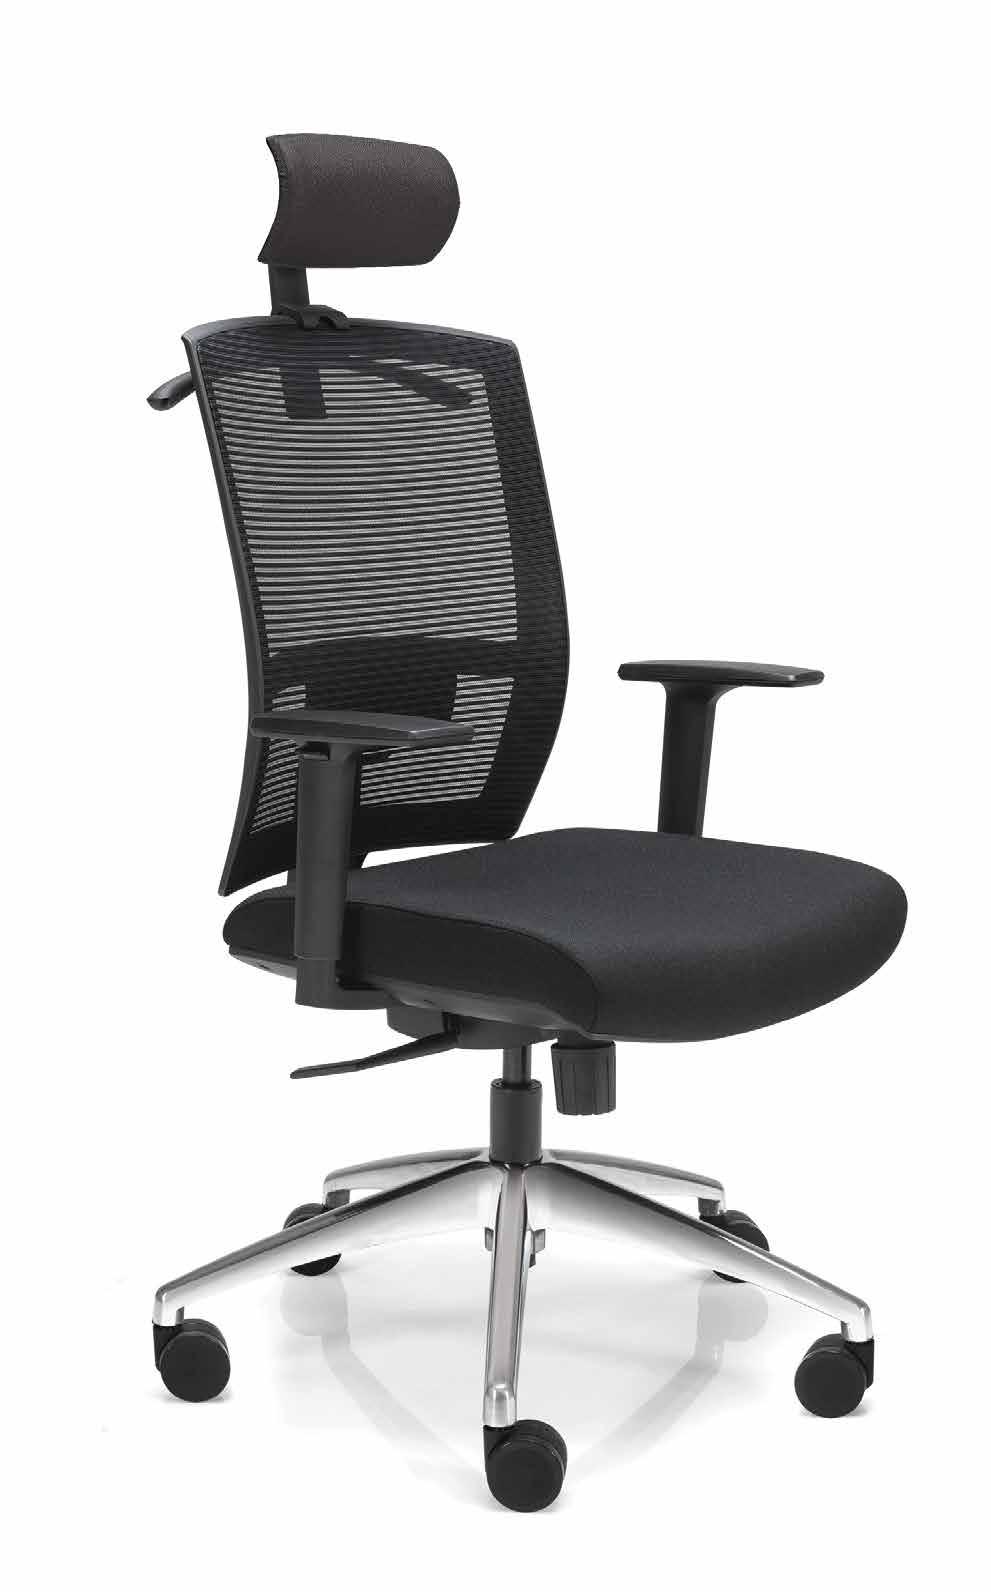 1604i Cadeira giratória, espaldar alto, assento em tecido e encosto em tela com regulagem lombar Mecanismos com movimento sincronizado de assento e encosto com regulagem de tensão.